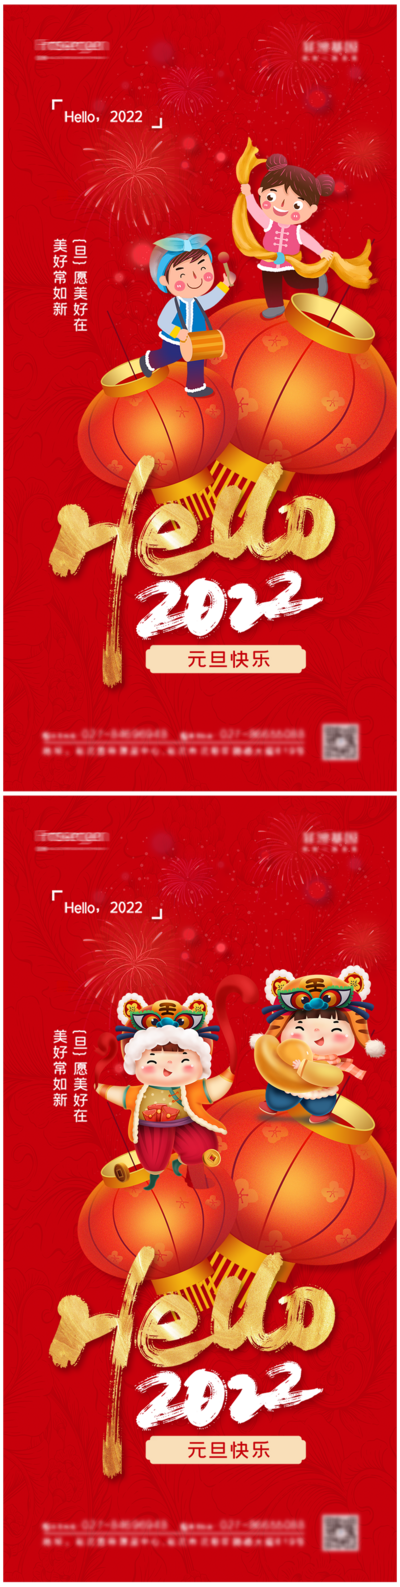 南门网 海报 房地产 中国传统节日 元旦 新年 虎年 2022 插画 喜庆 系列